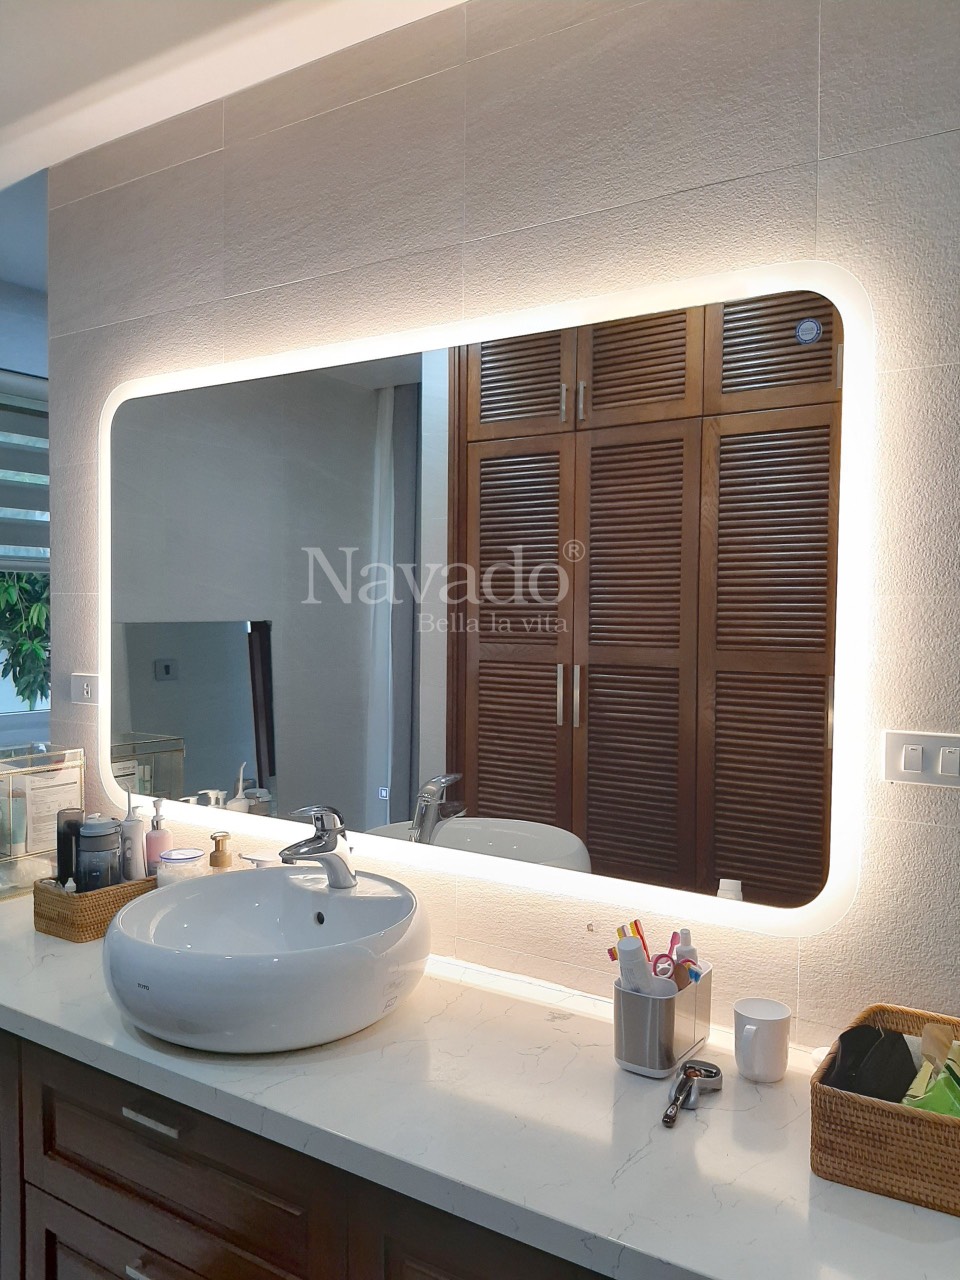 Gương phòng tắm hình chữ nhật LED hắt sẽ làm bạn trầm trồ với ánh sáng tuyệt đẹp của nó. Thiết kế độc đáo này sẽ đem lại không gian hiện đại và đầy sức sống cho phòng tắm của bạn. Hãy xem ảnh để cảm nhận sự độc đáo của chiếc gương này và những ánh sáng đẹp mắt mà nó mang lại.